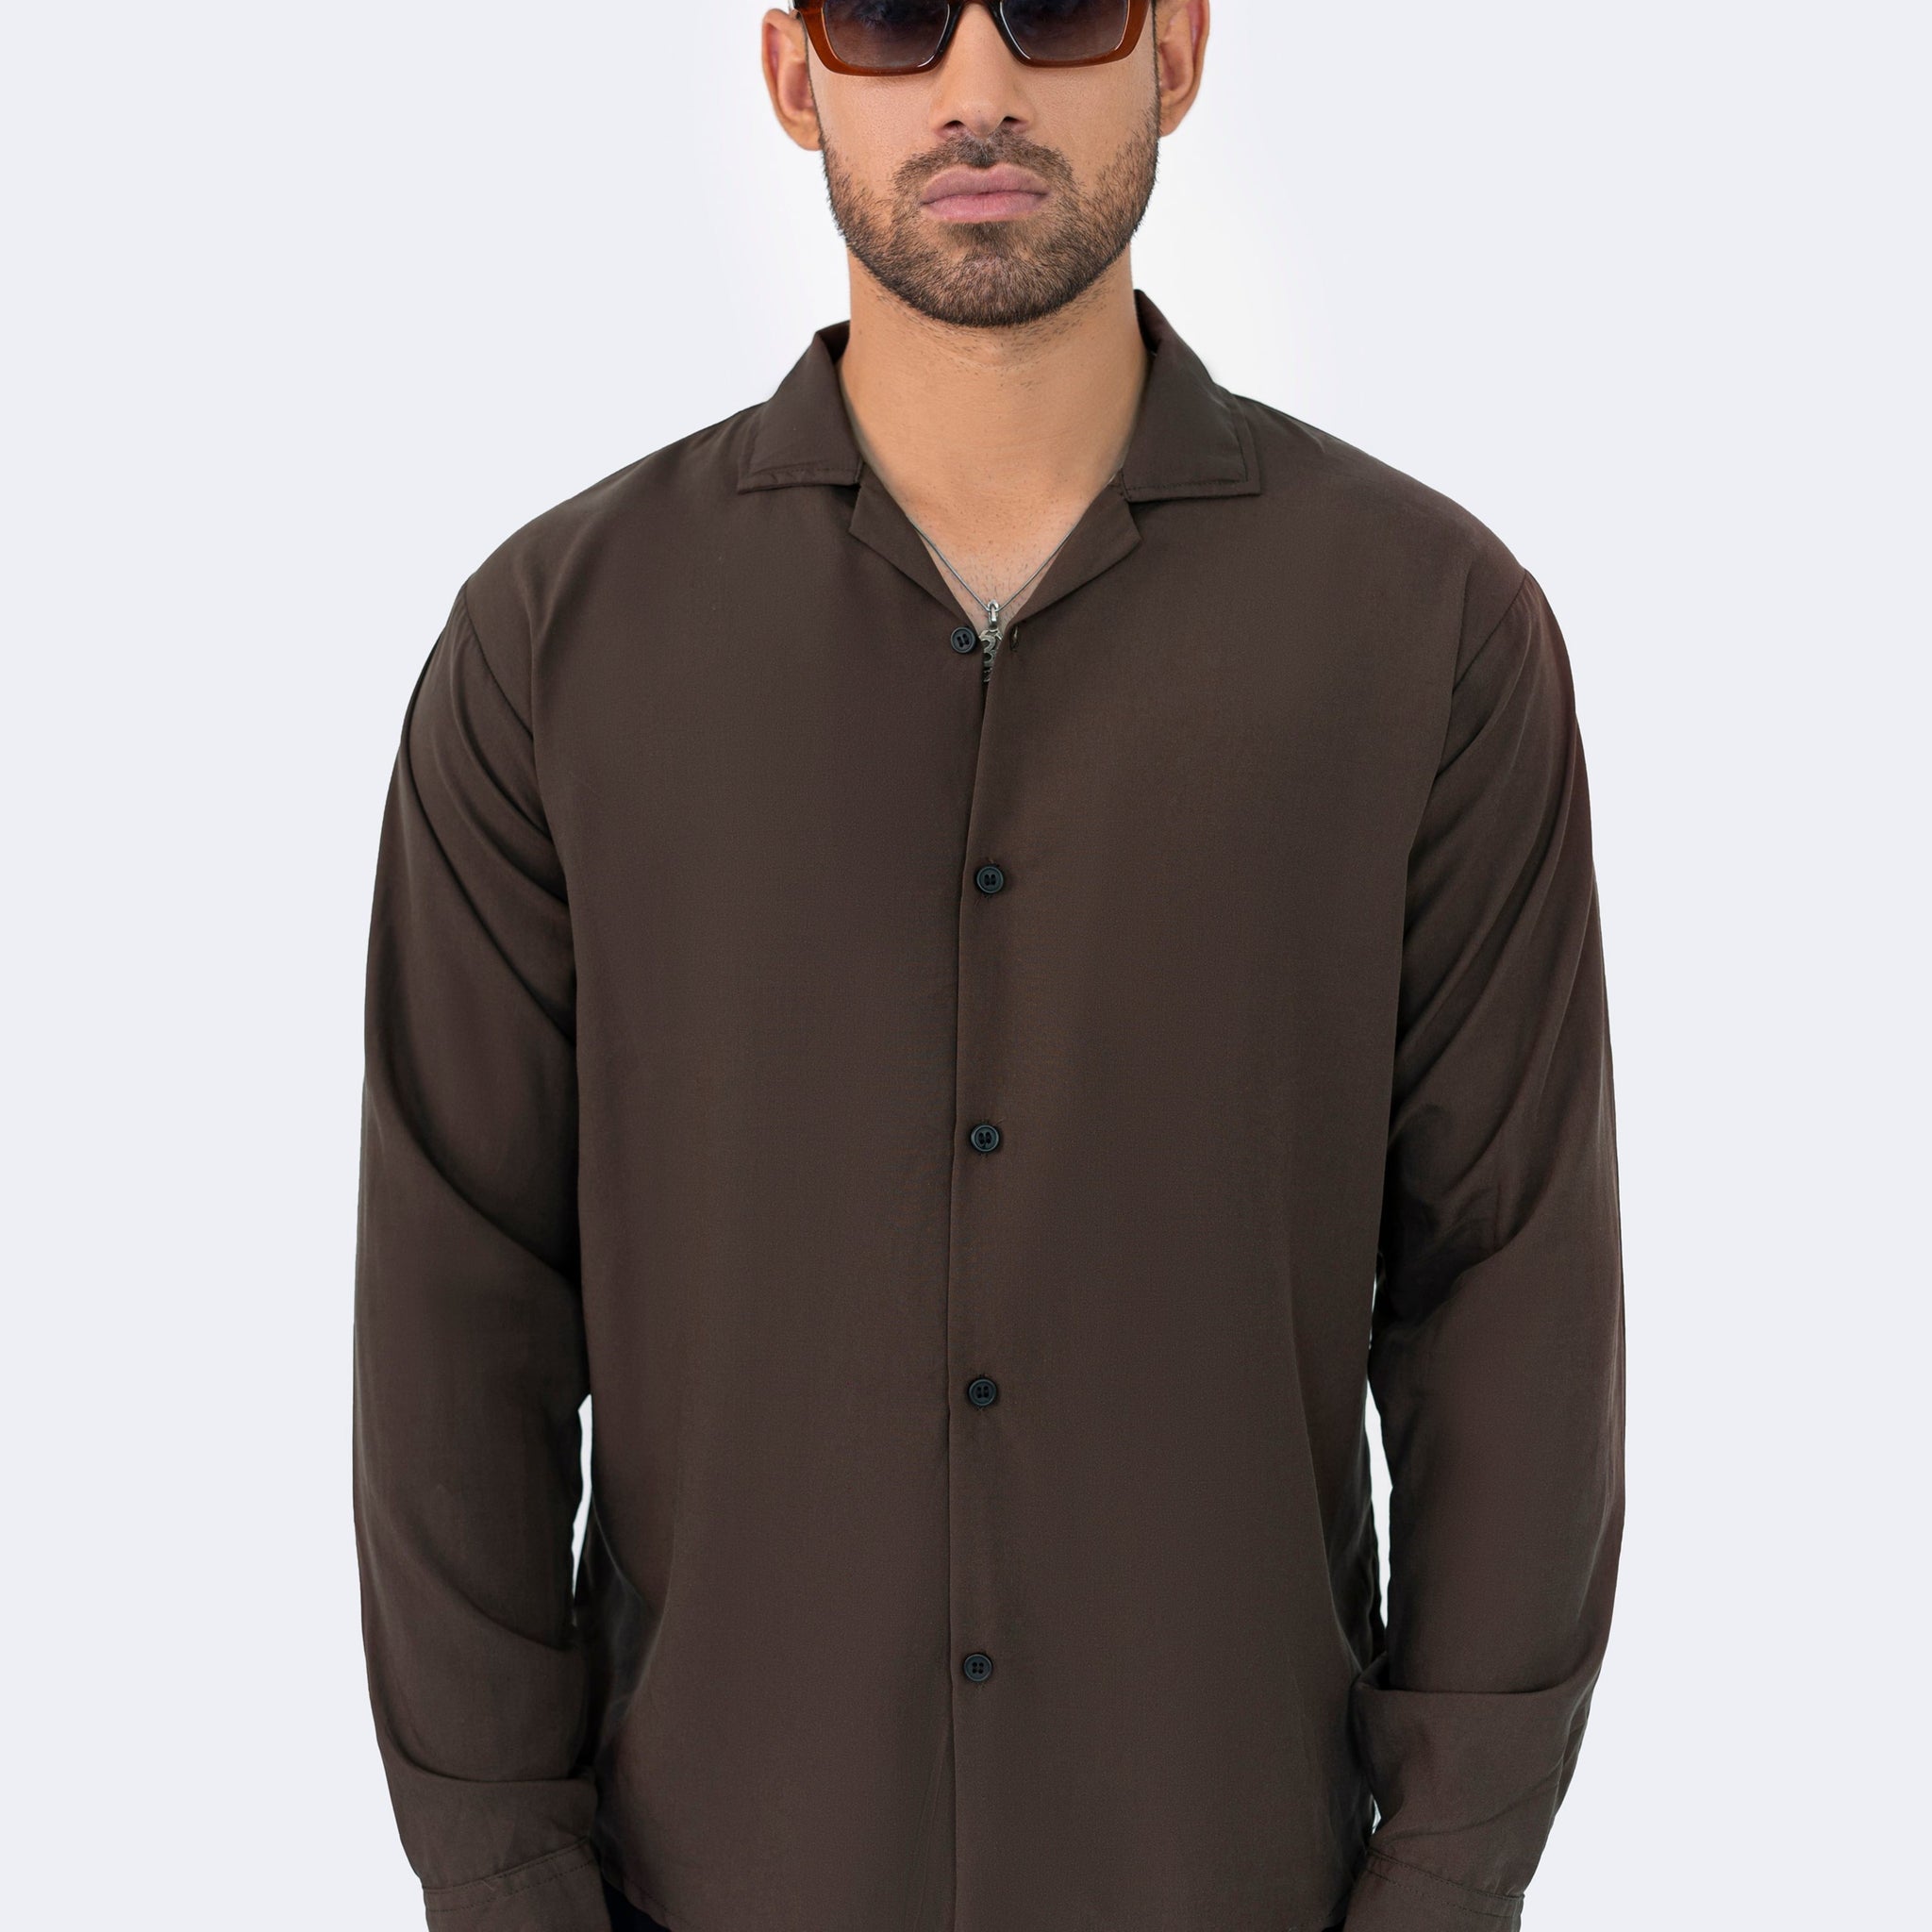 Basic Brown Shirt - Full Sleeves